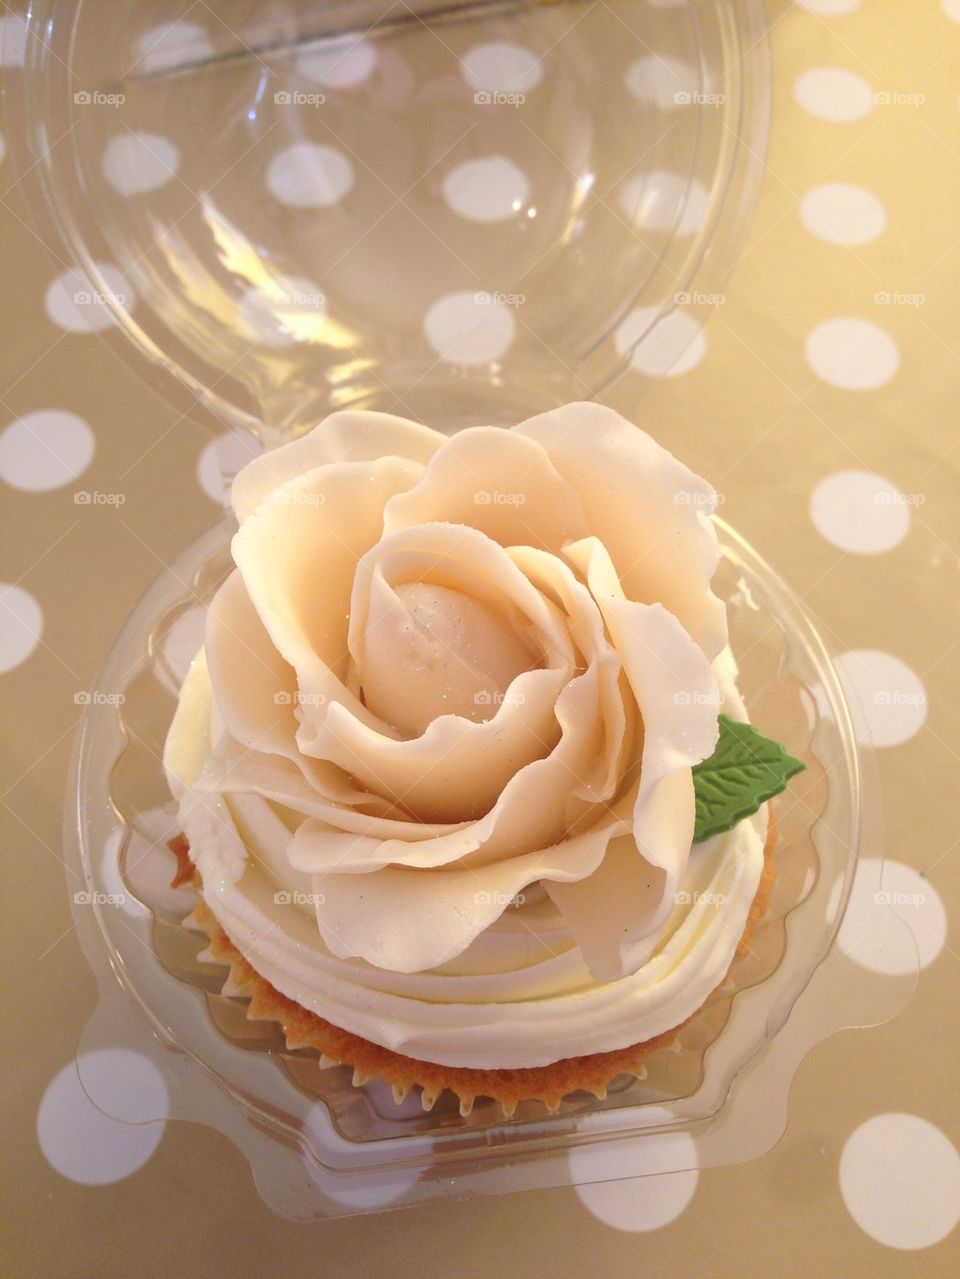 Sugar paste rose cupcake